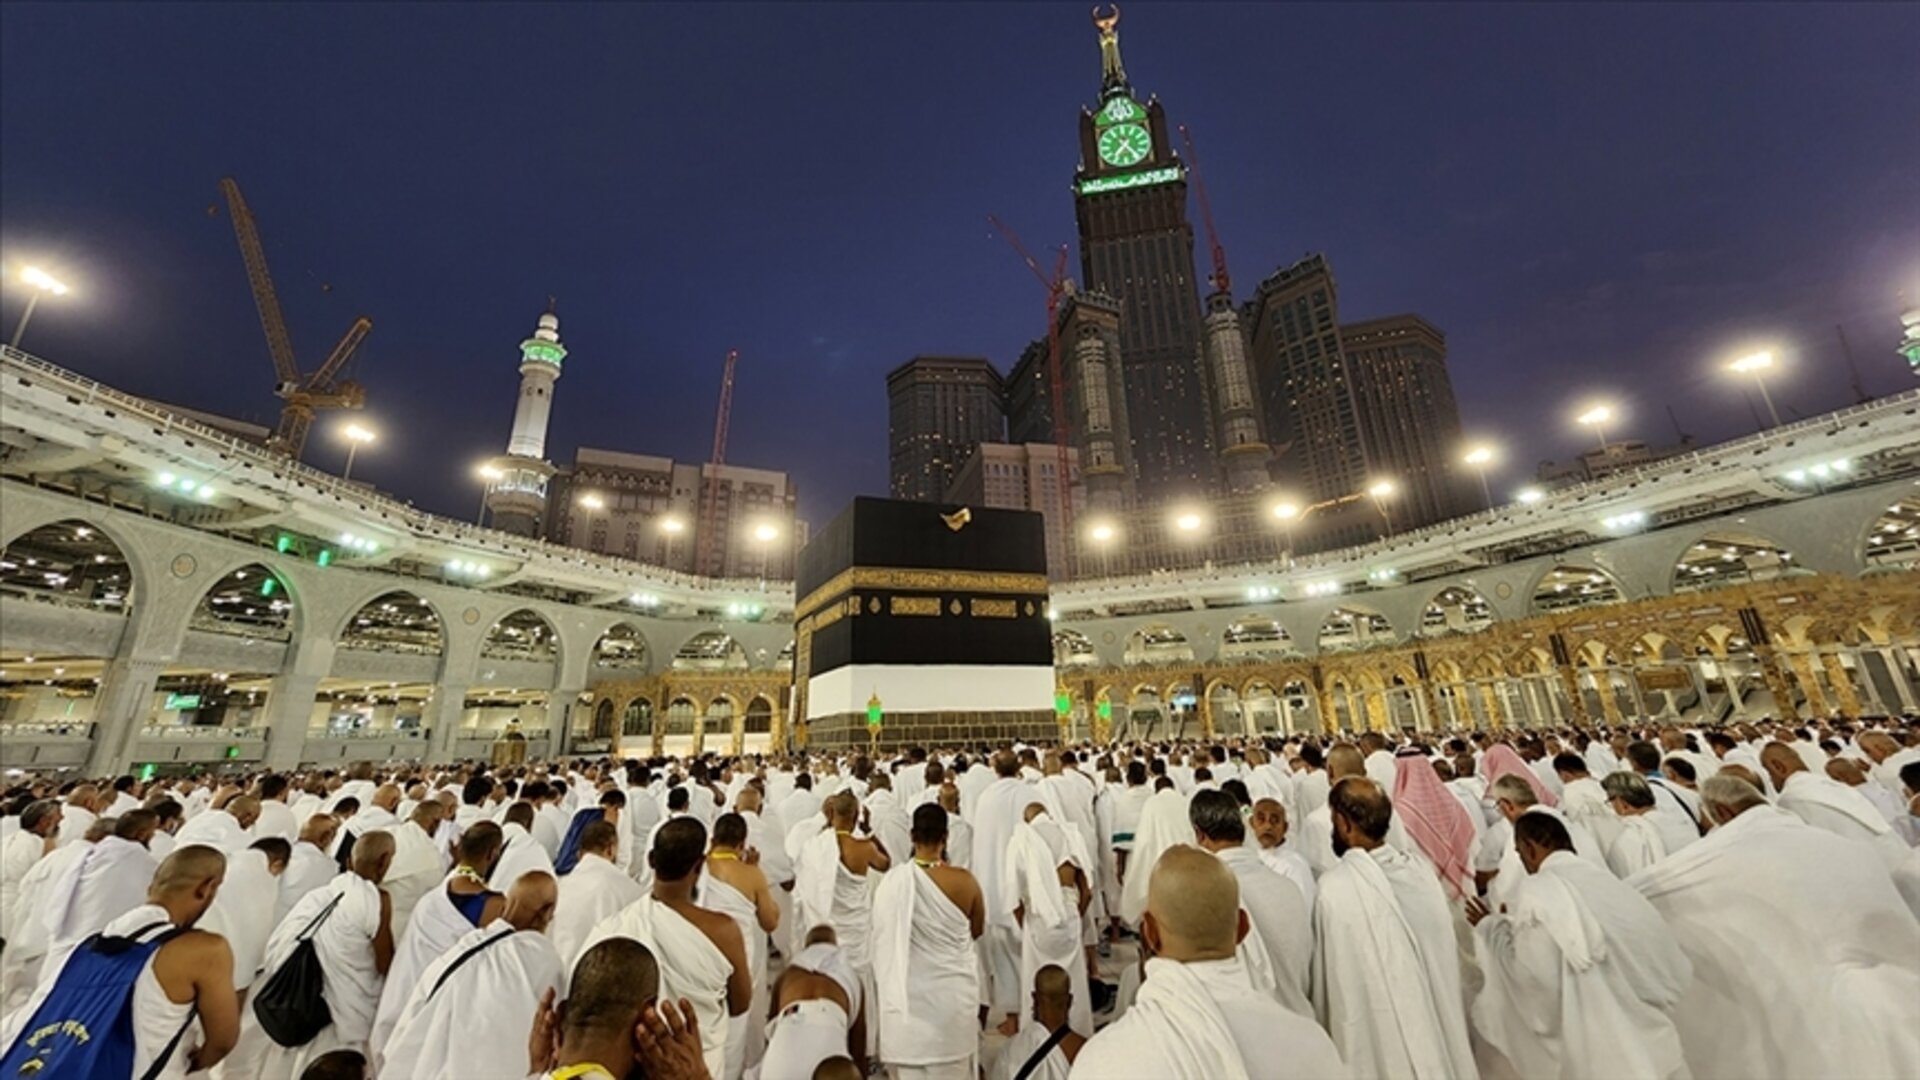 يمكن للأجانب من العرب والسوريين المقيمين في تركيا الحصول على تأشيرة العمرة لزيارة بيت الله الحرام والأراضي المقدسة في المملكة العربية السعودية وفقاً لشروط محددة